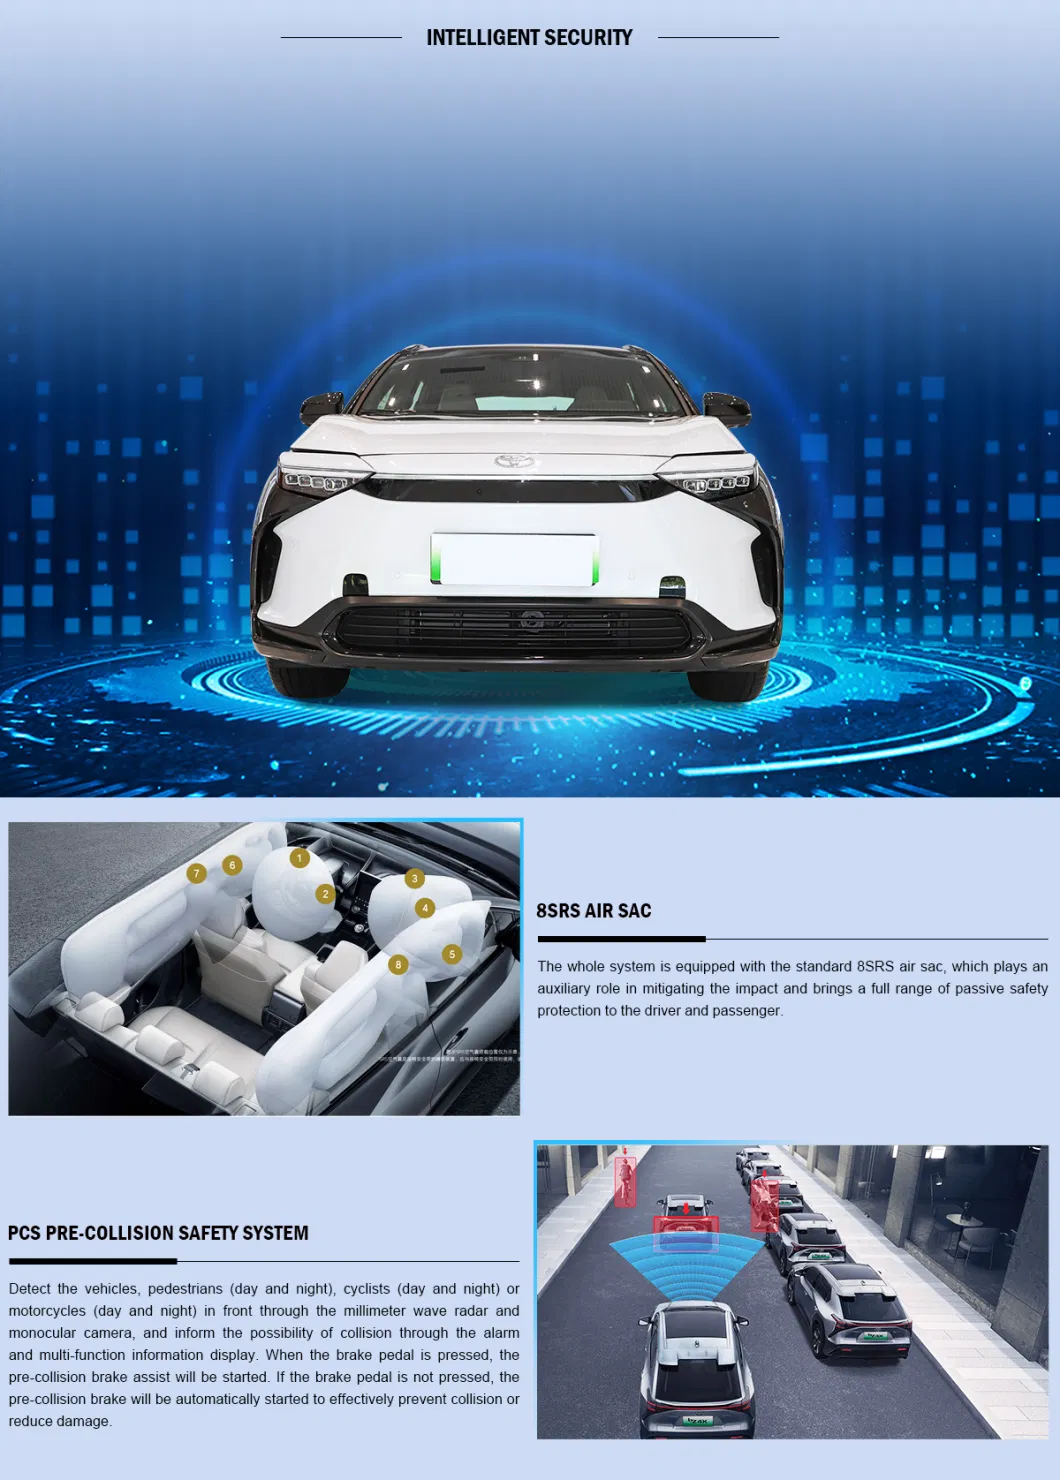 Sale 2022 Toyo-Ta Bz4X Joy EV Car 400km Two Wheel Drive Elite New Electric Passenger Vehicles